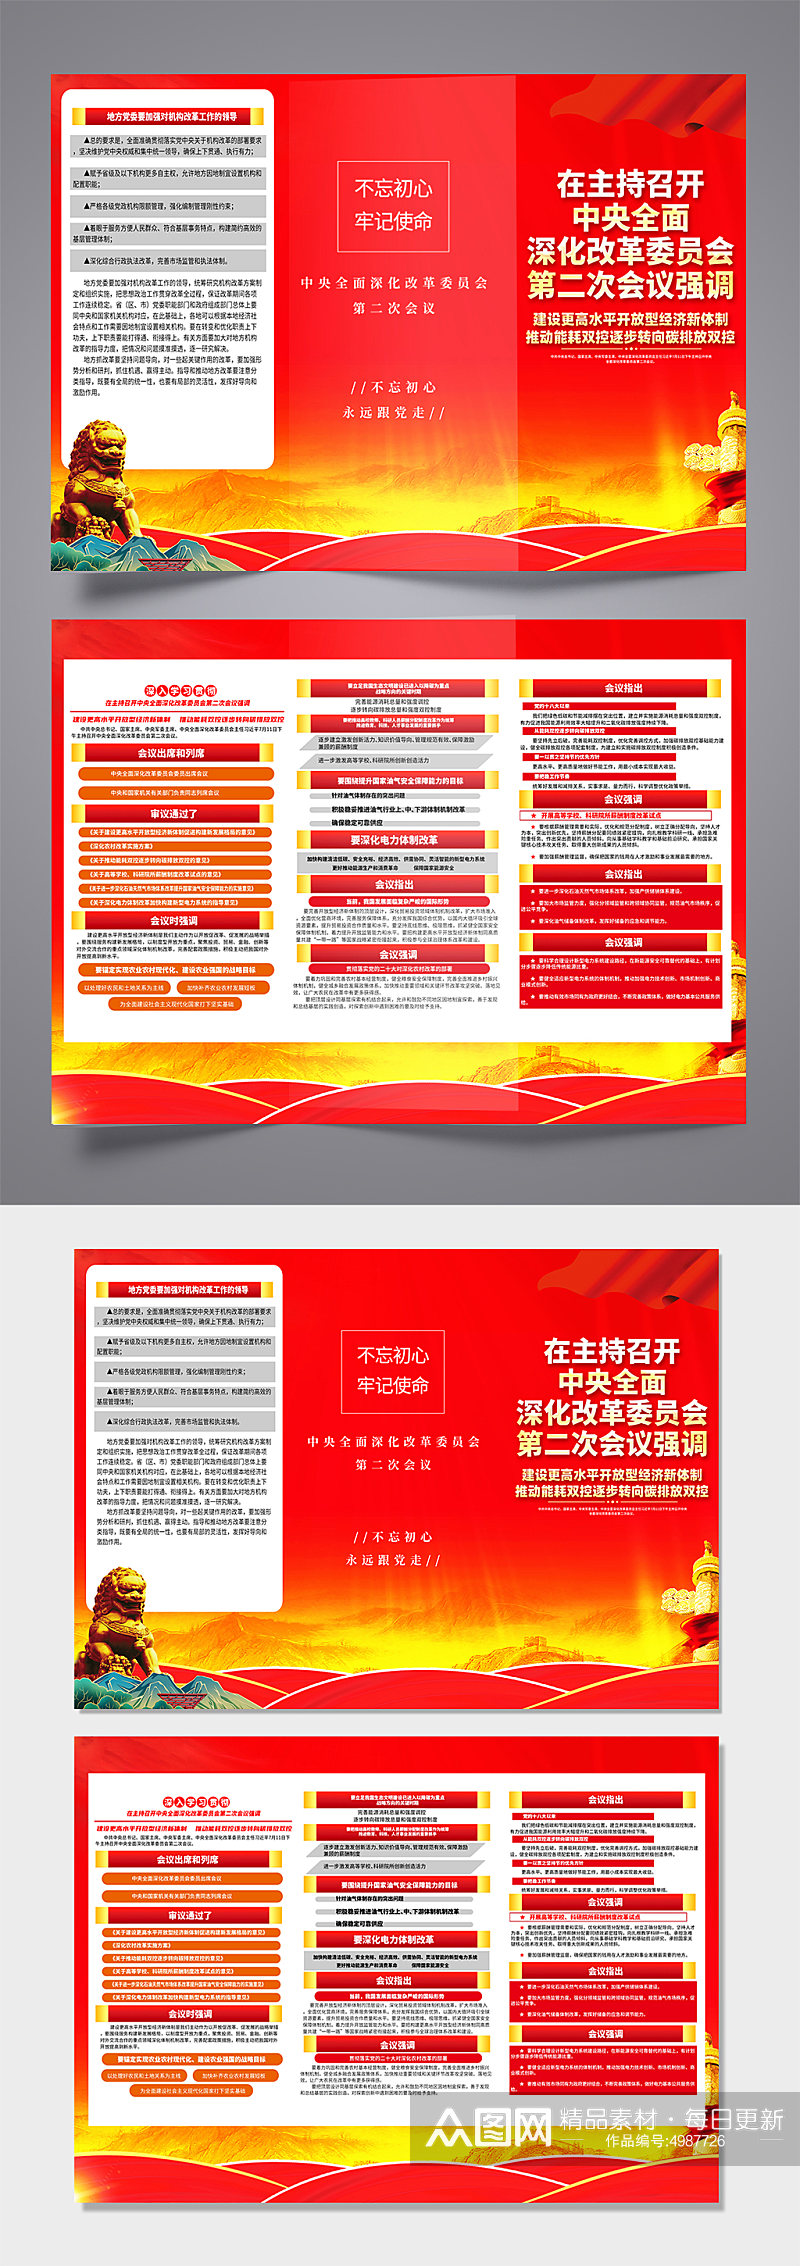 中央全面深化改革委员会第二次会议党建折页素材